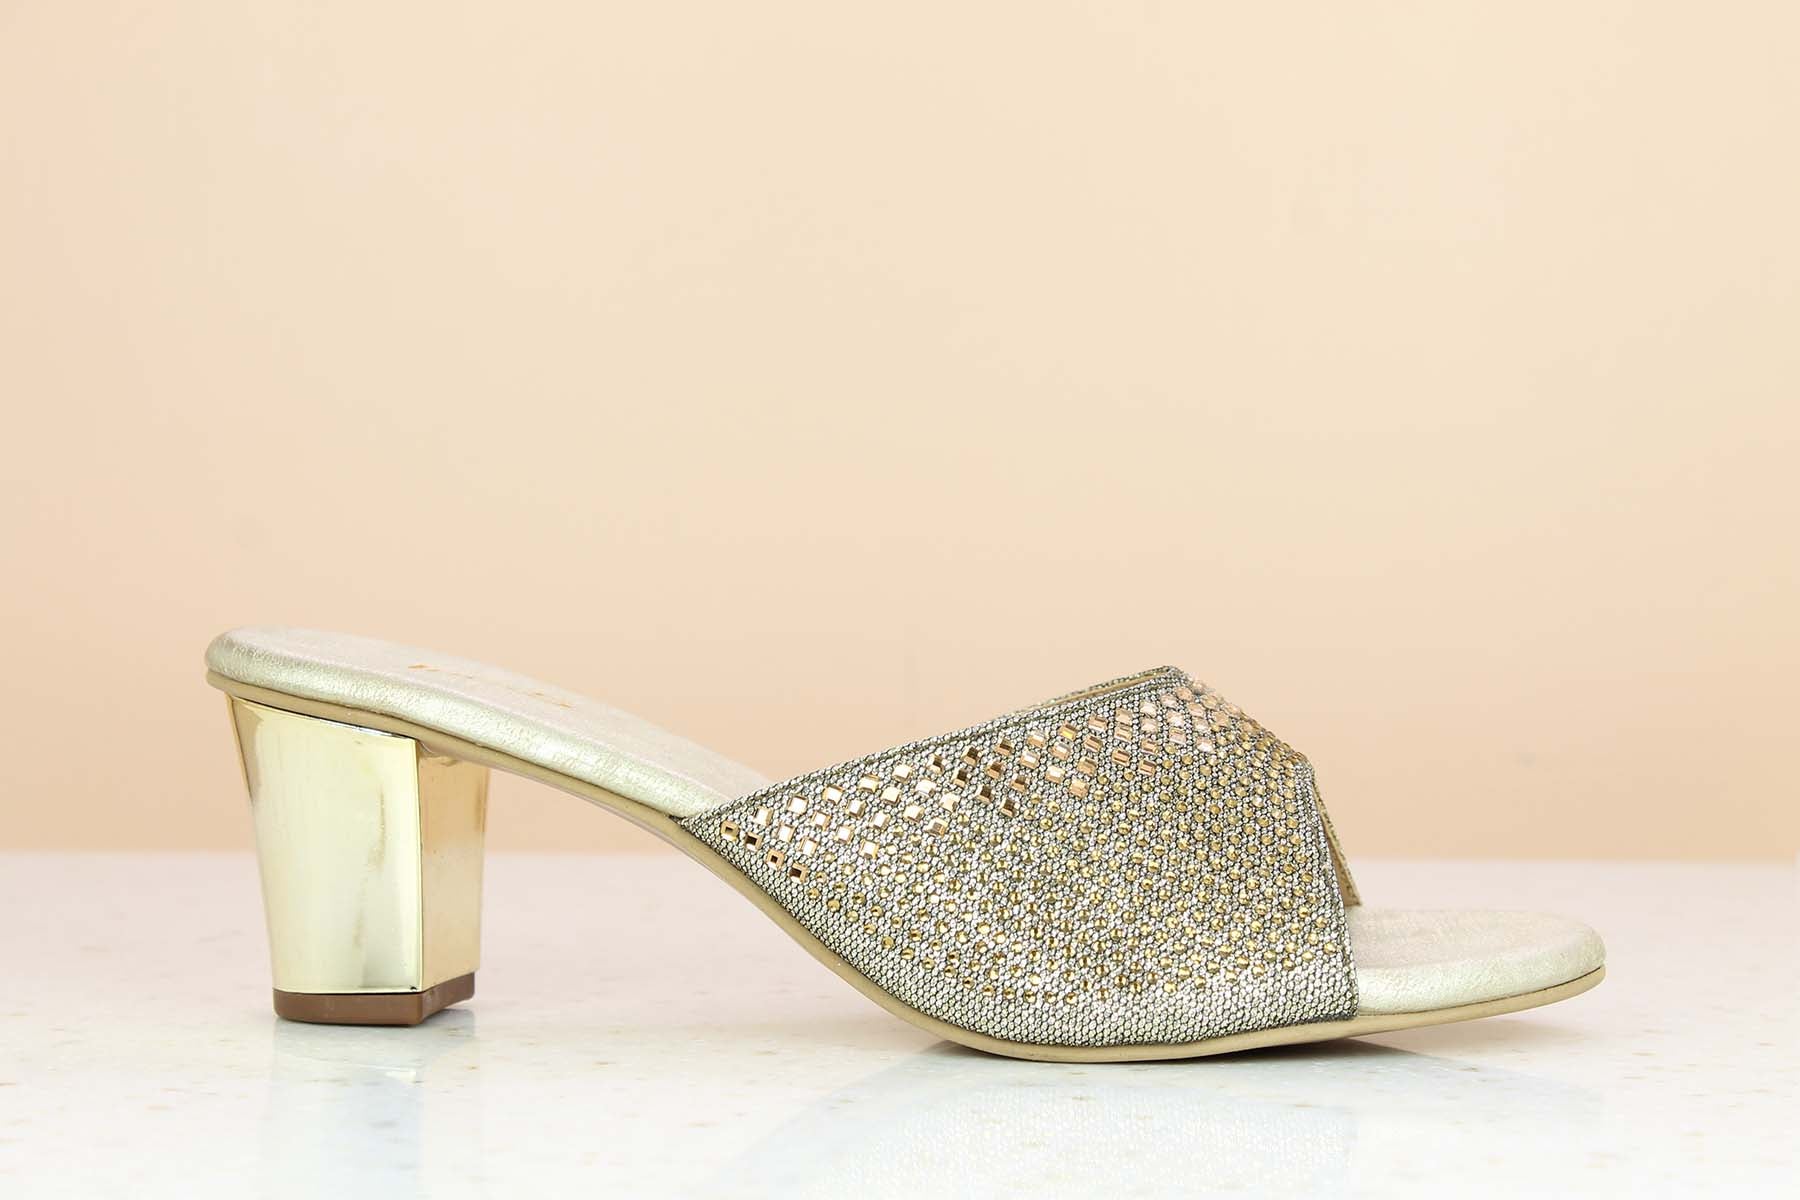 Buy Mochi Women Gold Casual Sandals Online | SKU: 40-49-15-36 – Mochi Shoes